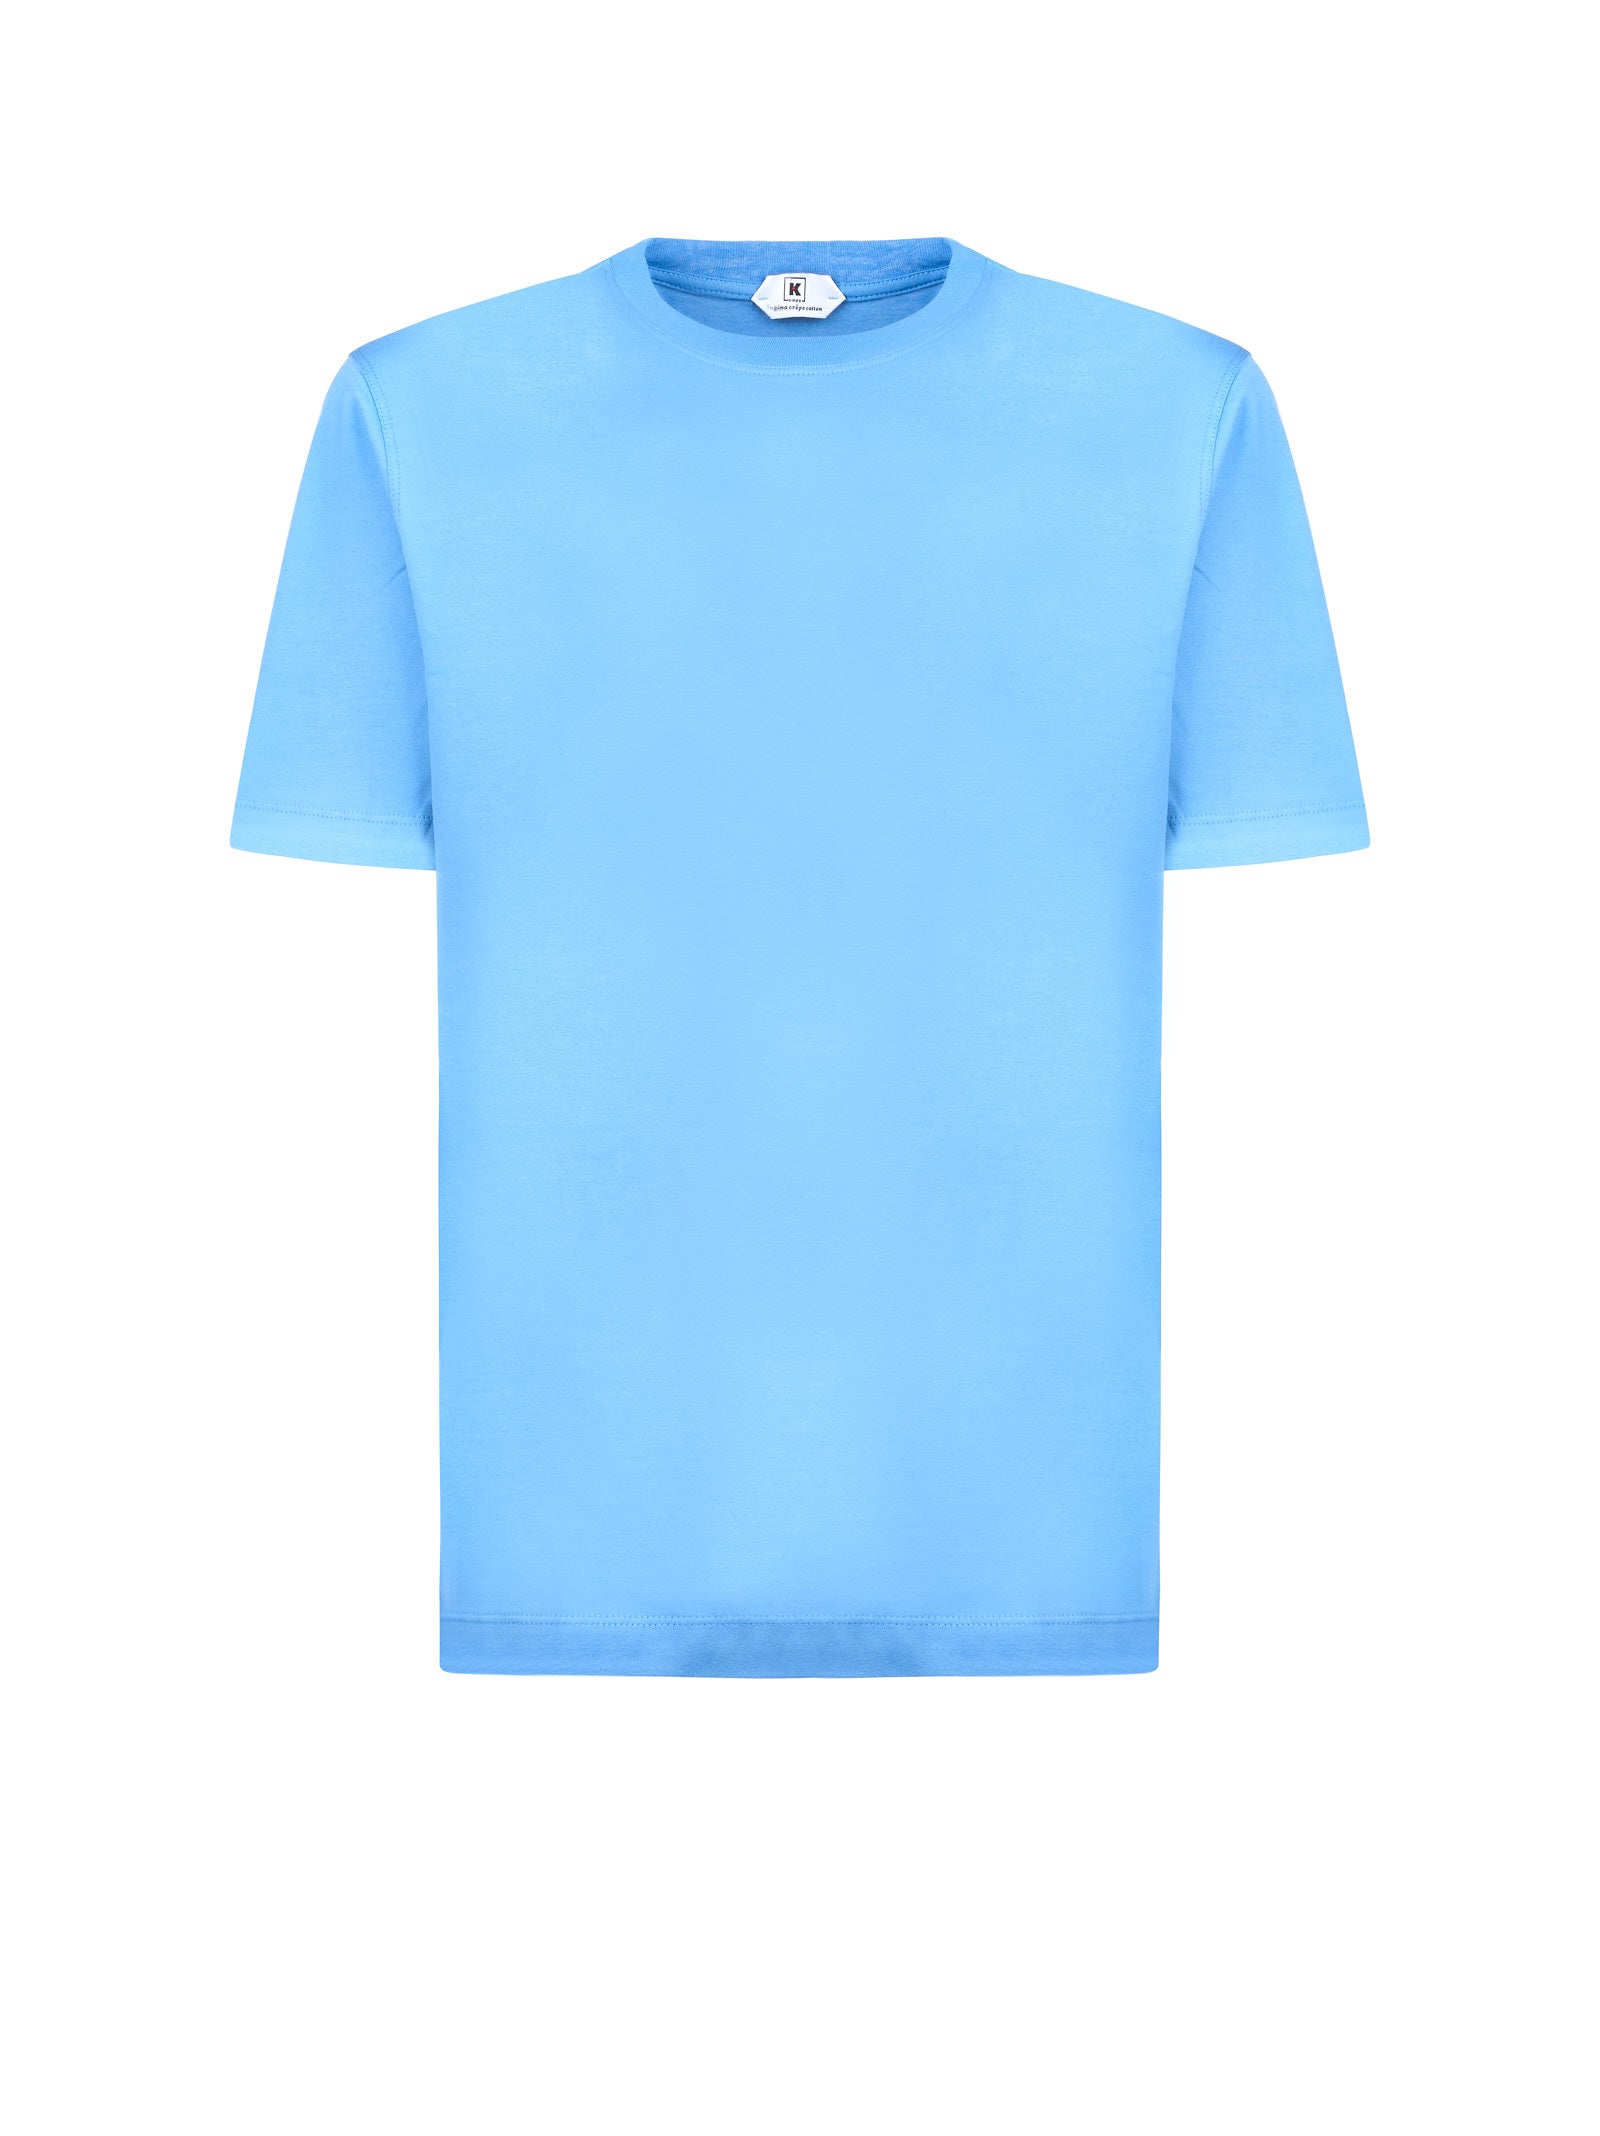 T-shirt KIRED 09 W79230 Azzurro